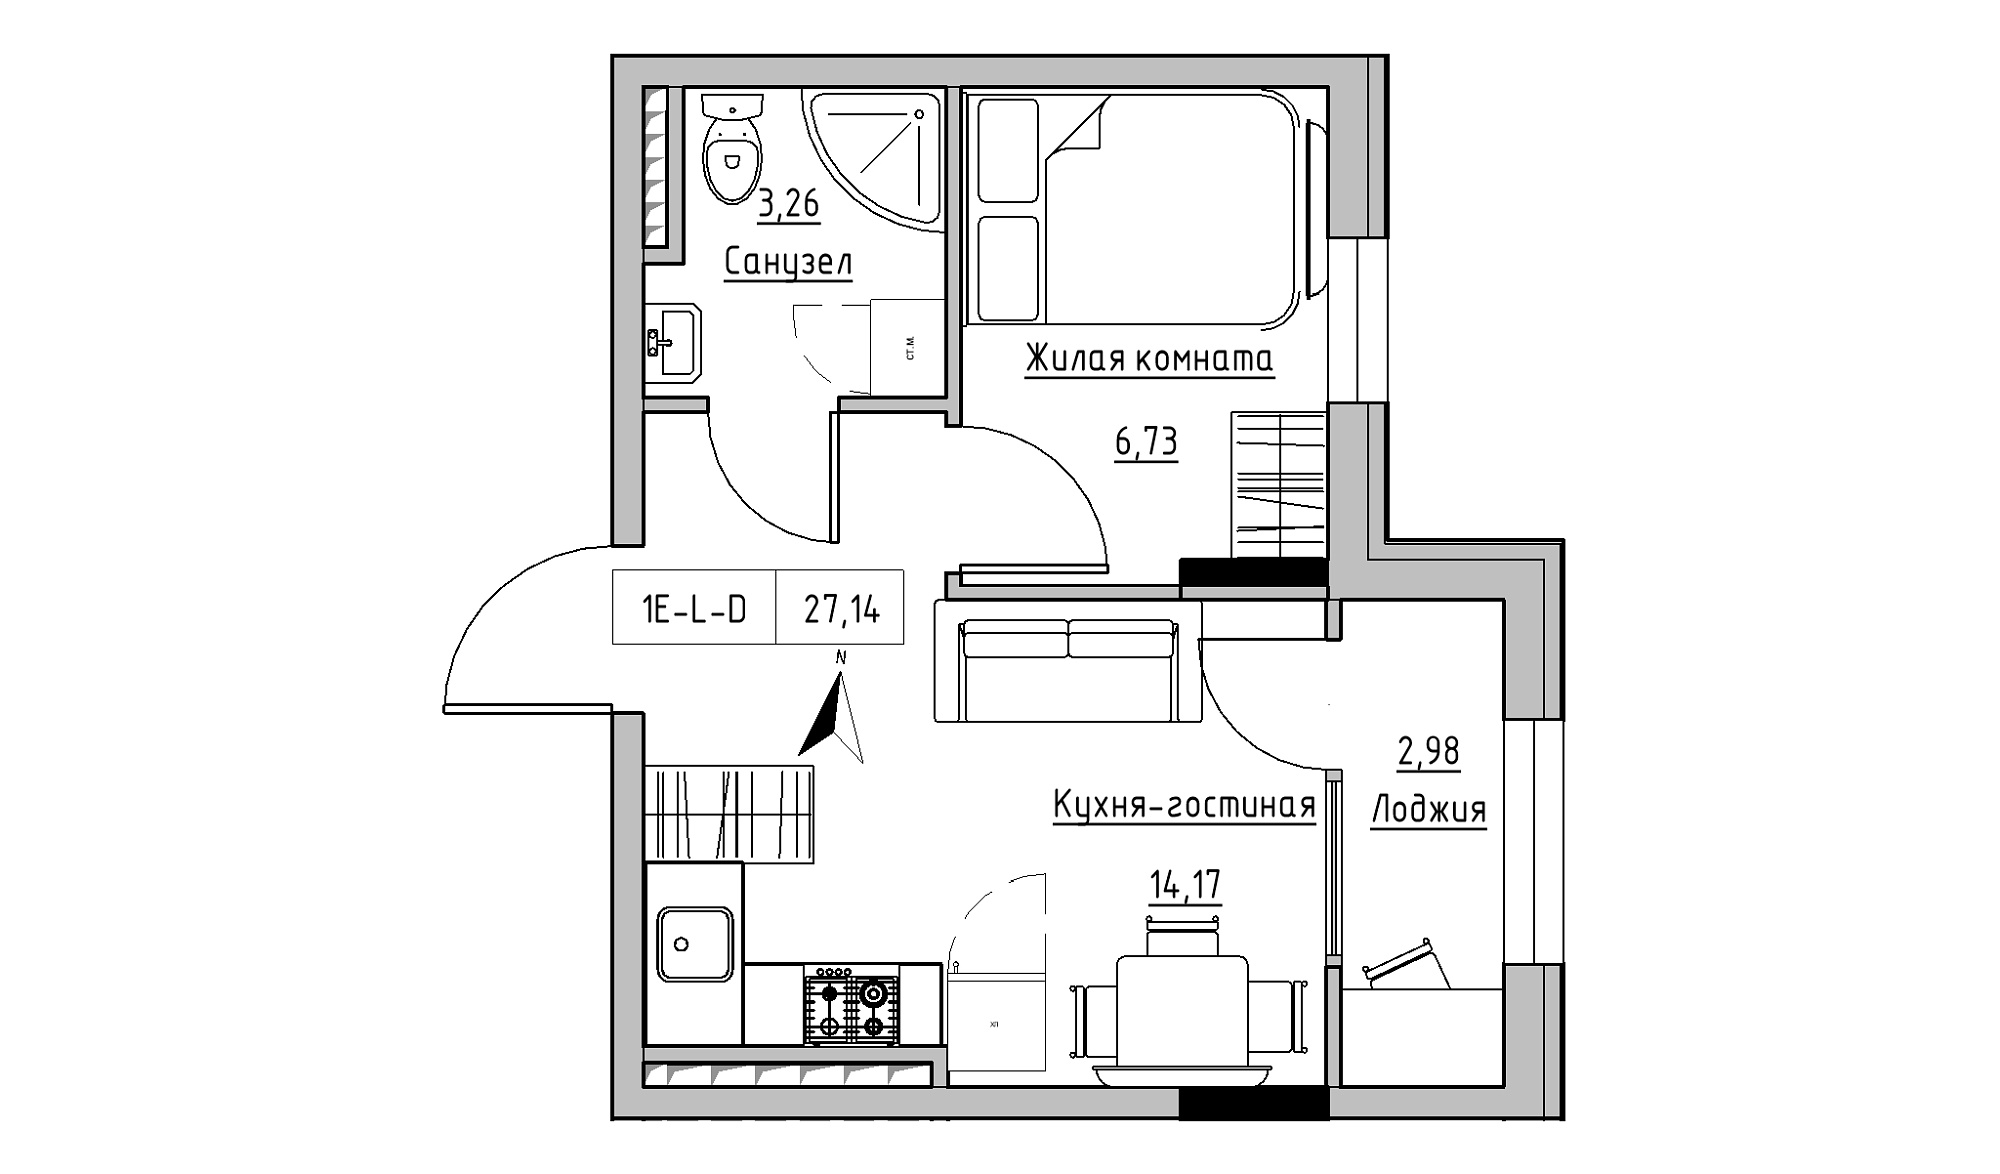 Планування 1-к квартира площею 27.14м2, KS-025-05/0001.